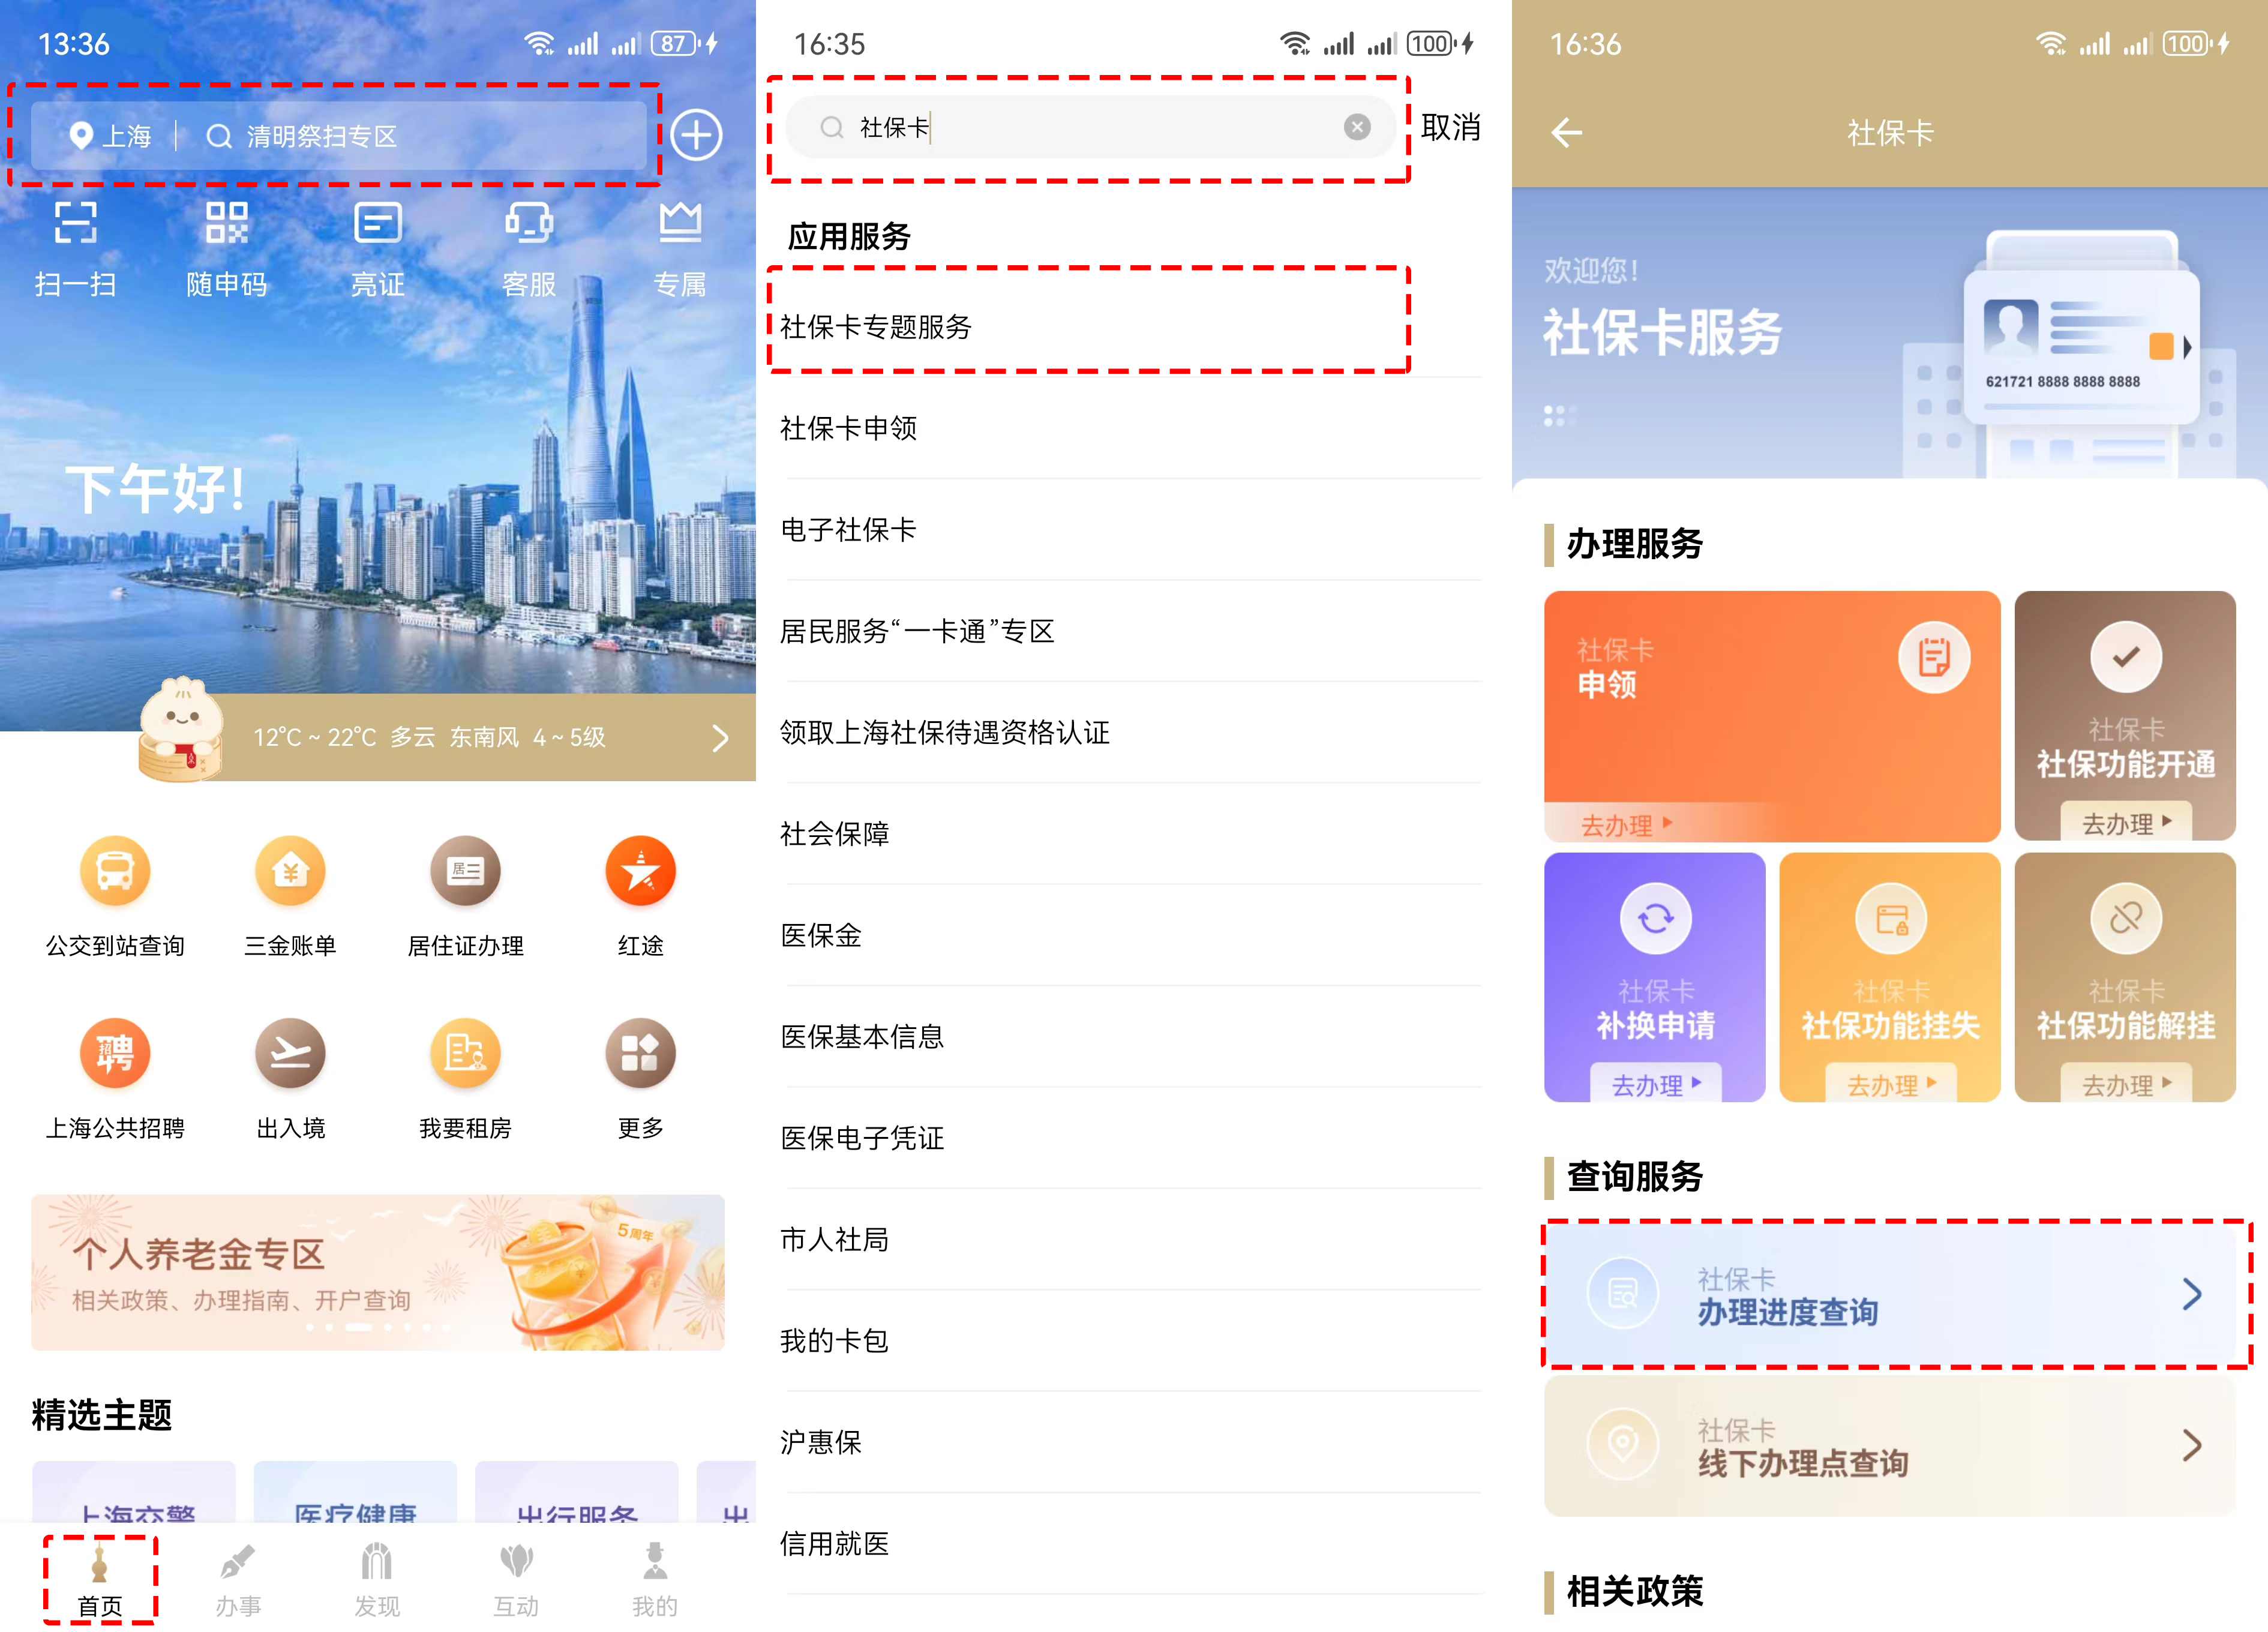 方式三:打开支付宝app,首页搜索上海社保卡生活号,点击左下角